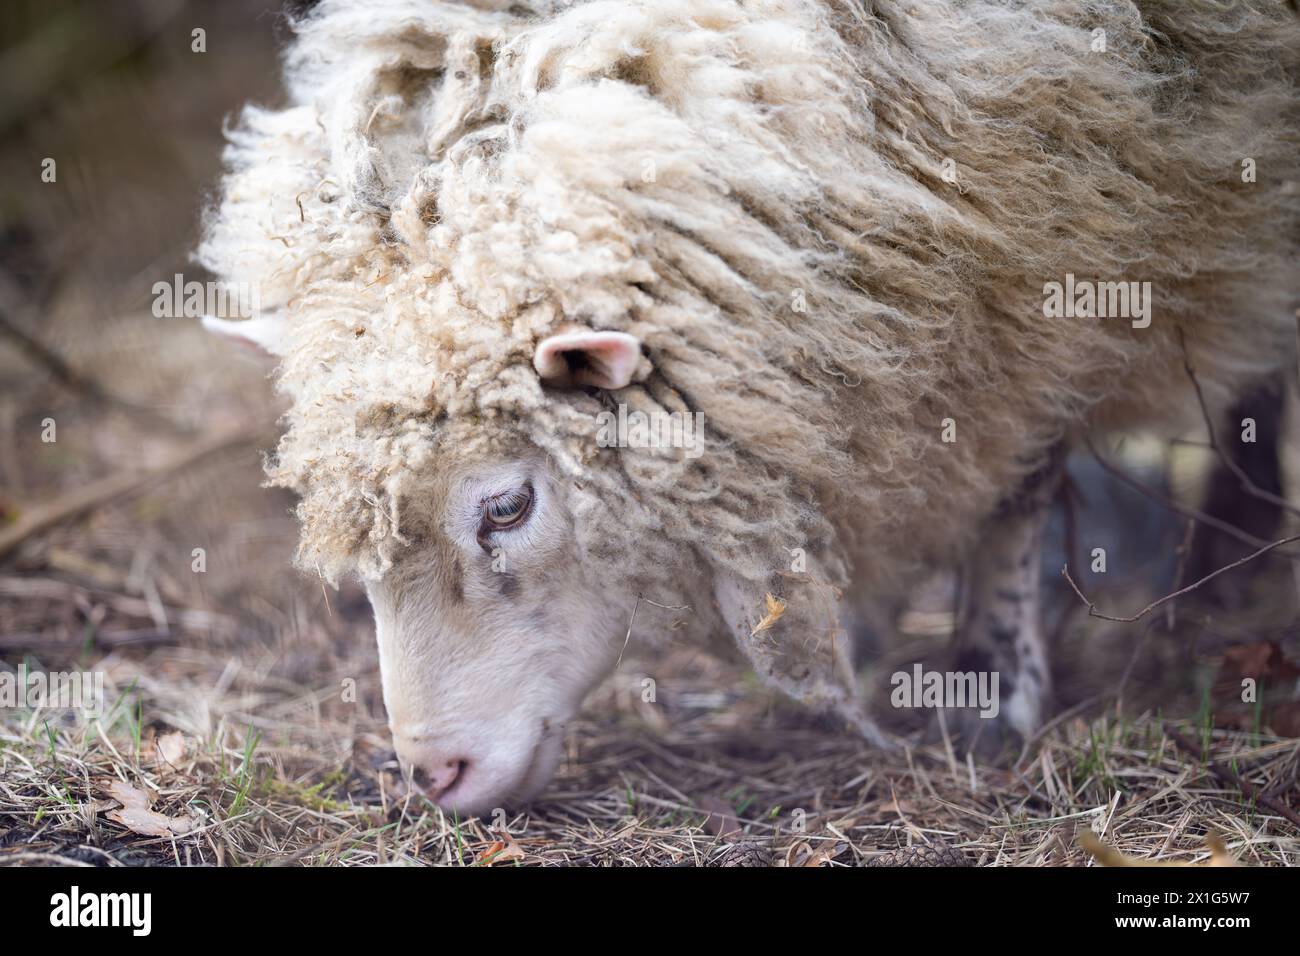 Unshorn moutons dans un champ de printemps. Gros plan d'un mouton domestique blanc (Ovis aries) qui paissait dans un champ. Horizontal. Banque D'Images